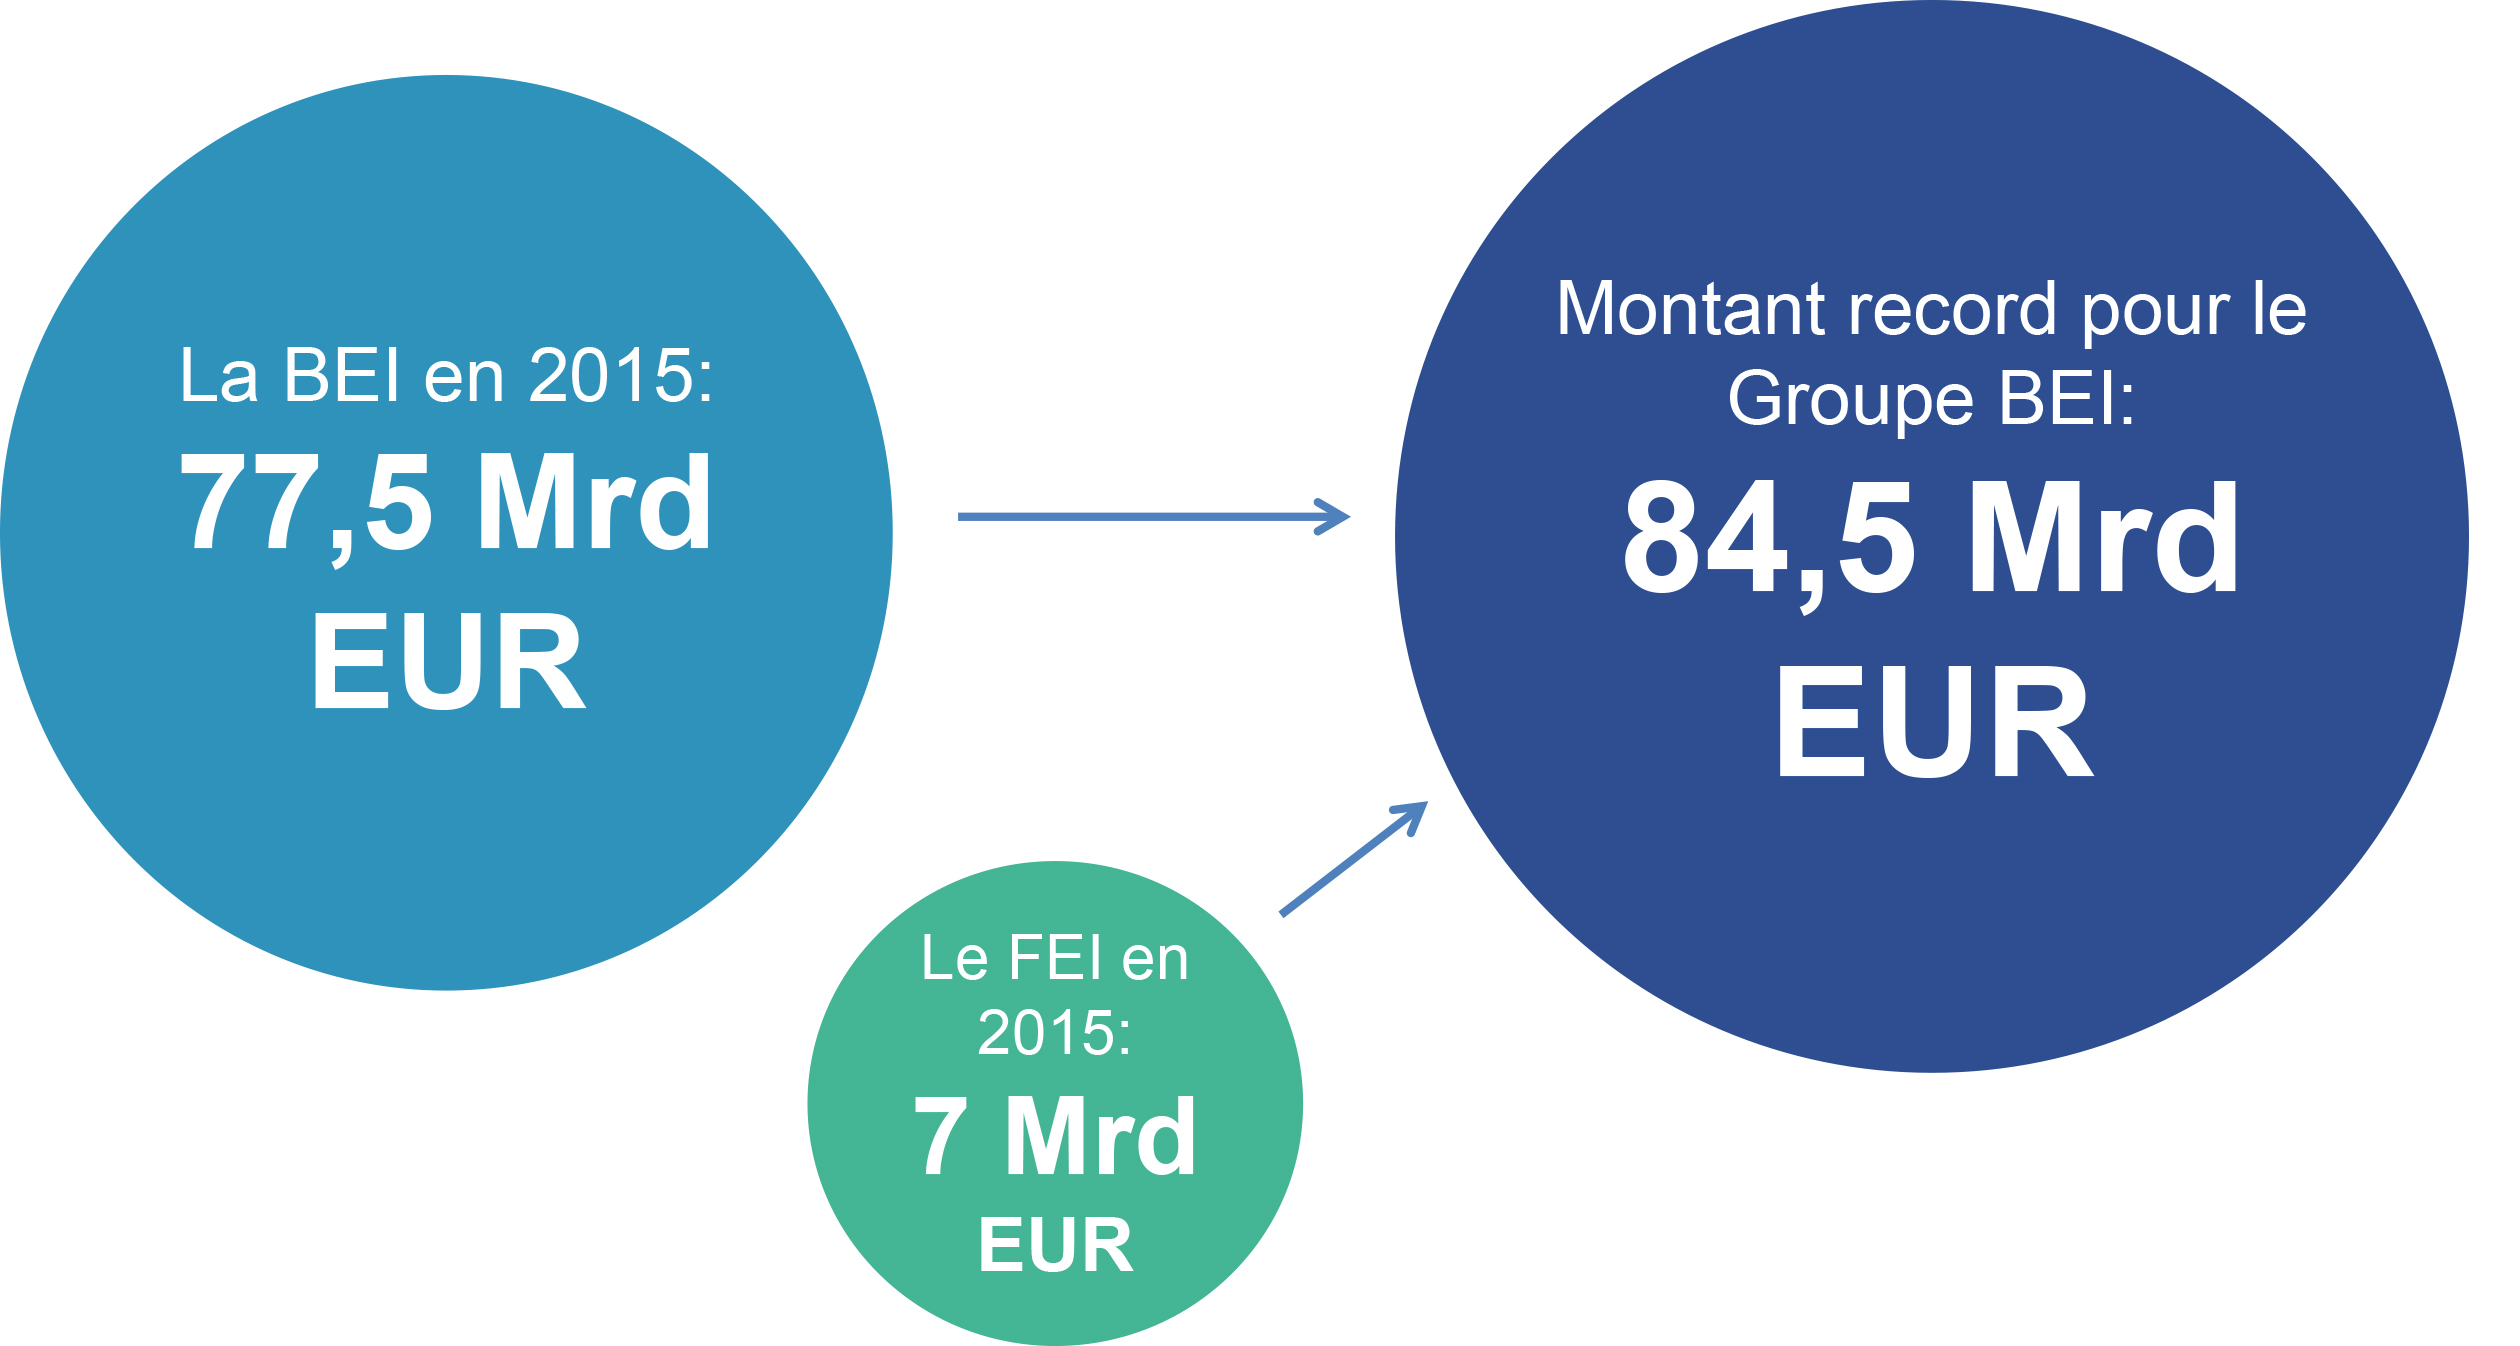 Synthèse de l'activité de prêt du Groupe BEI en 2015